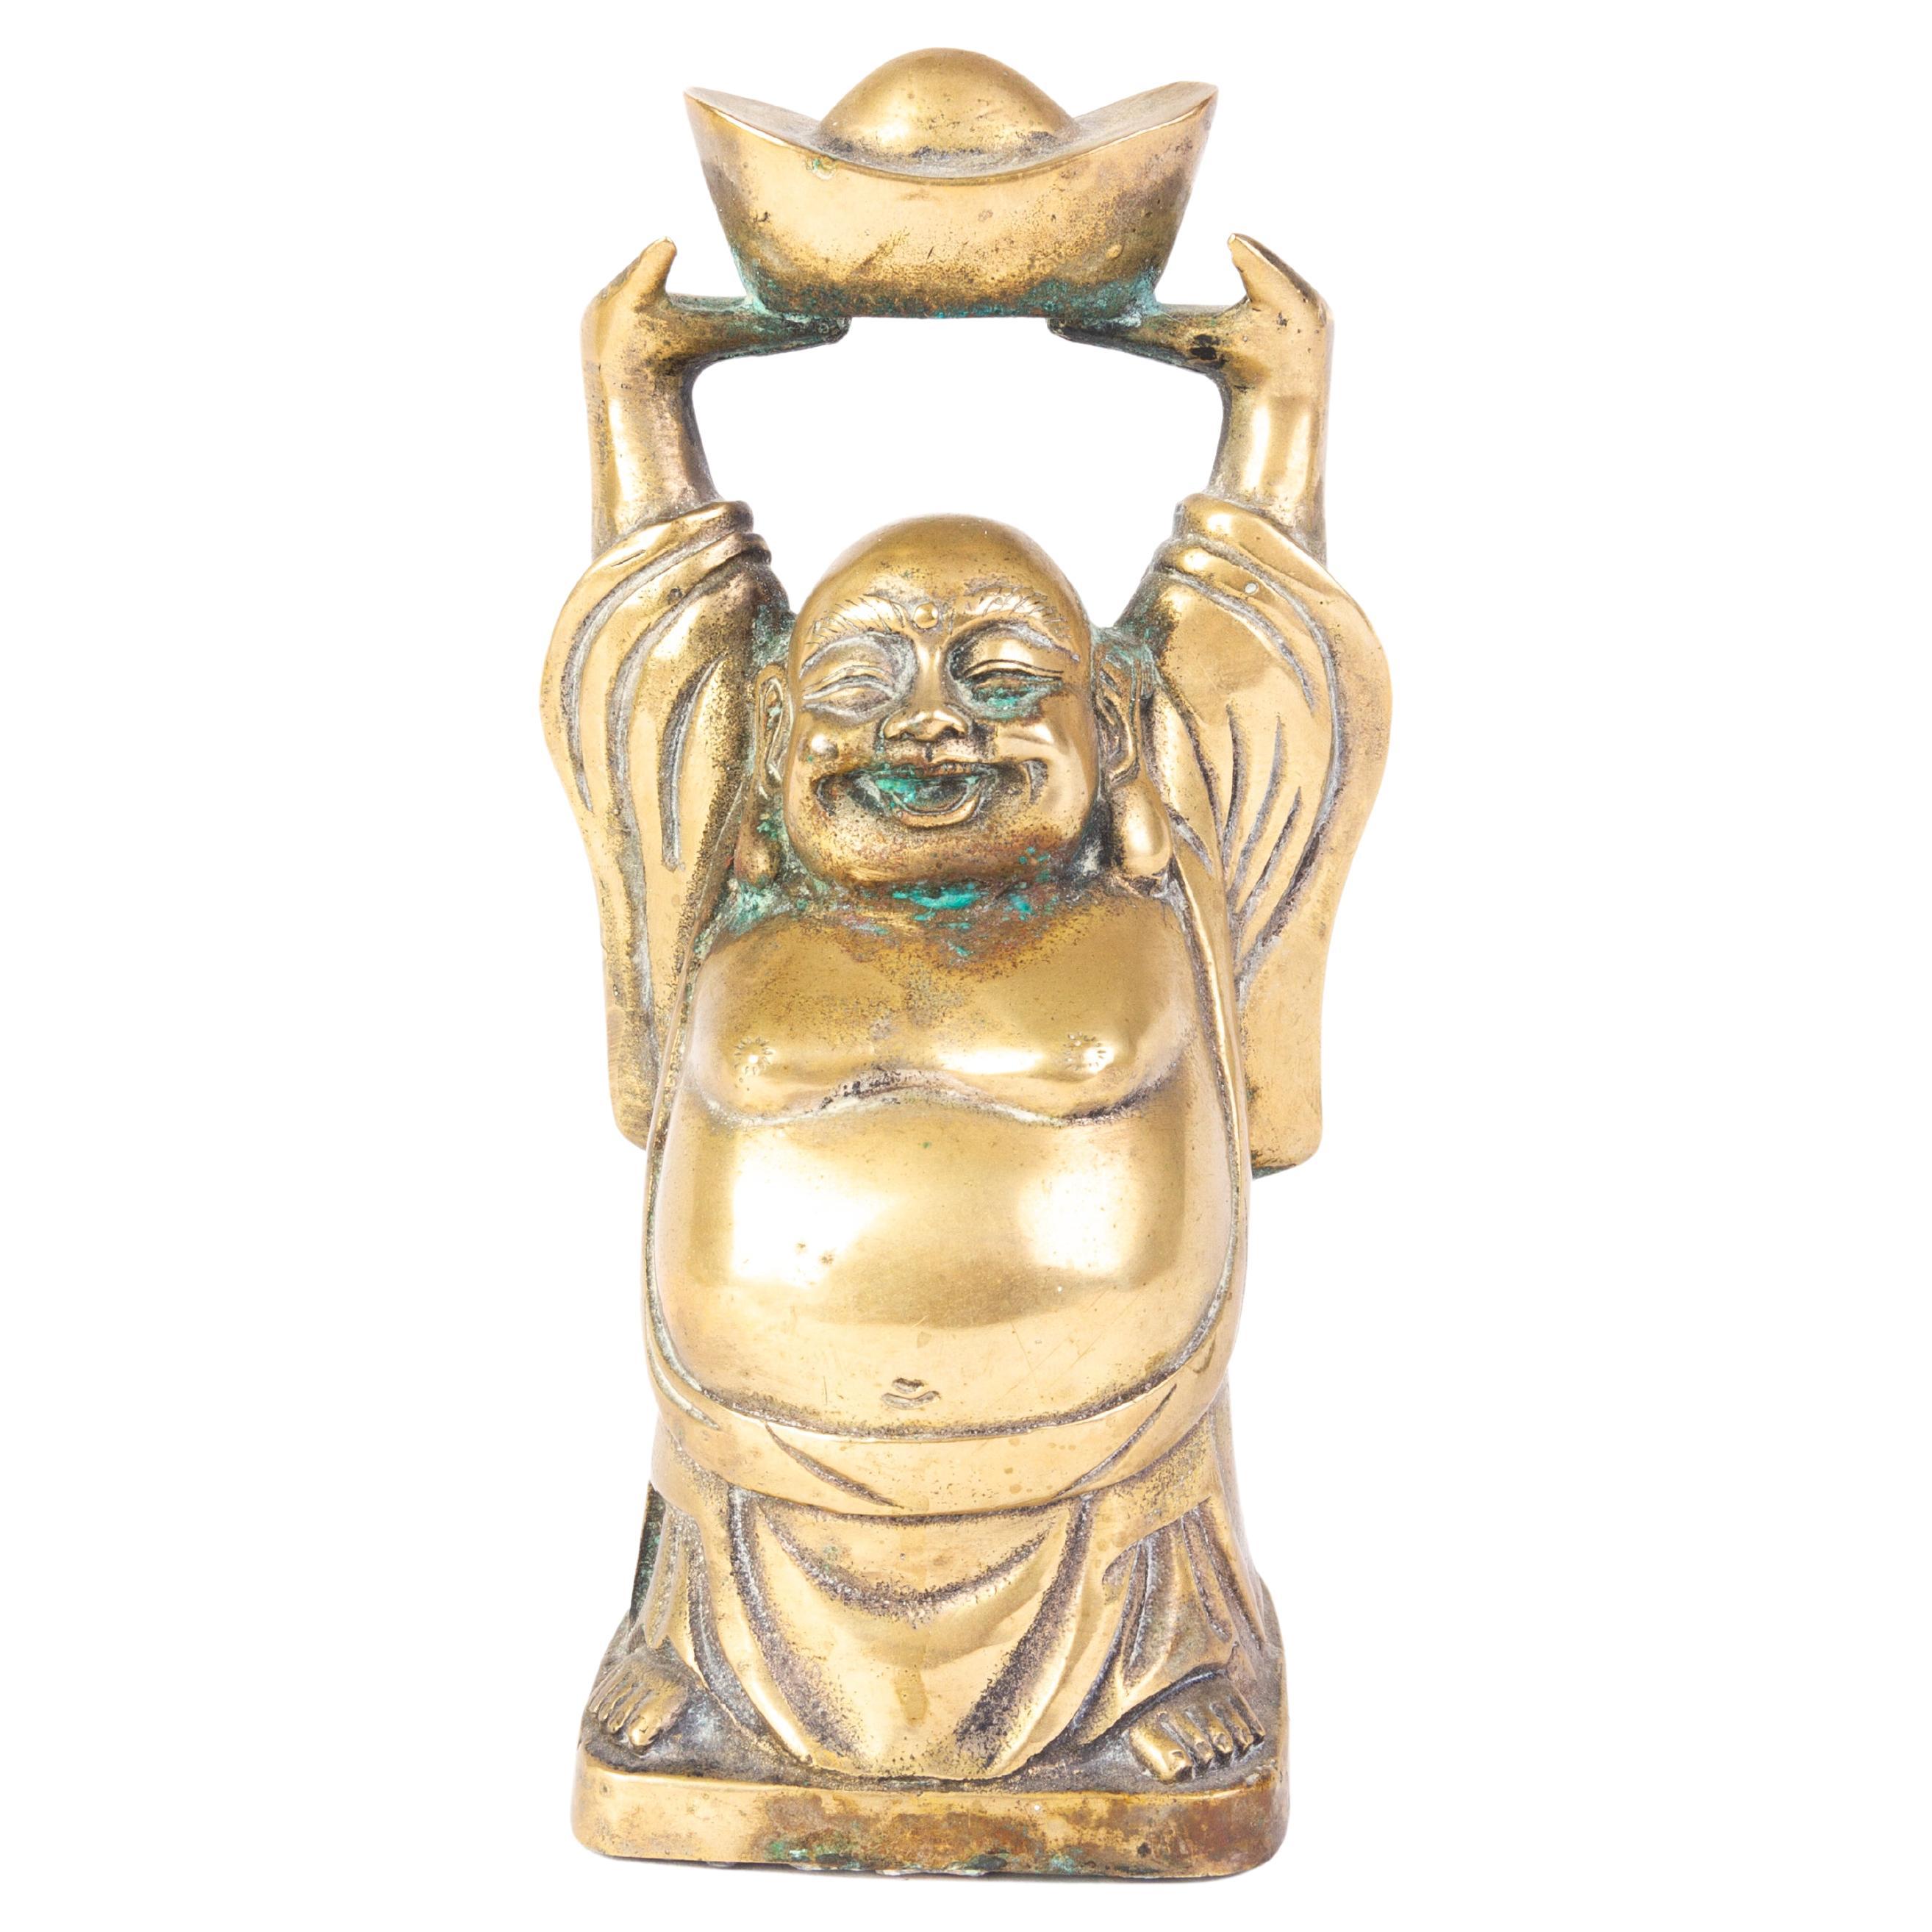 Chinese Bronze Buddha Sculpture 19th Century Qing